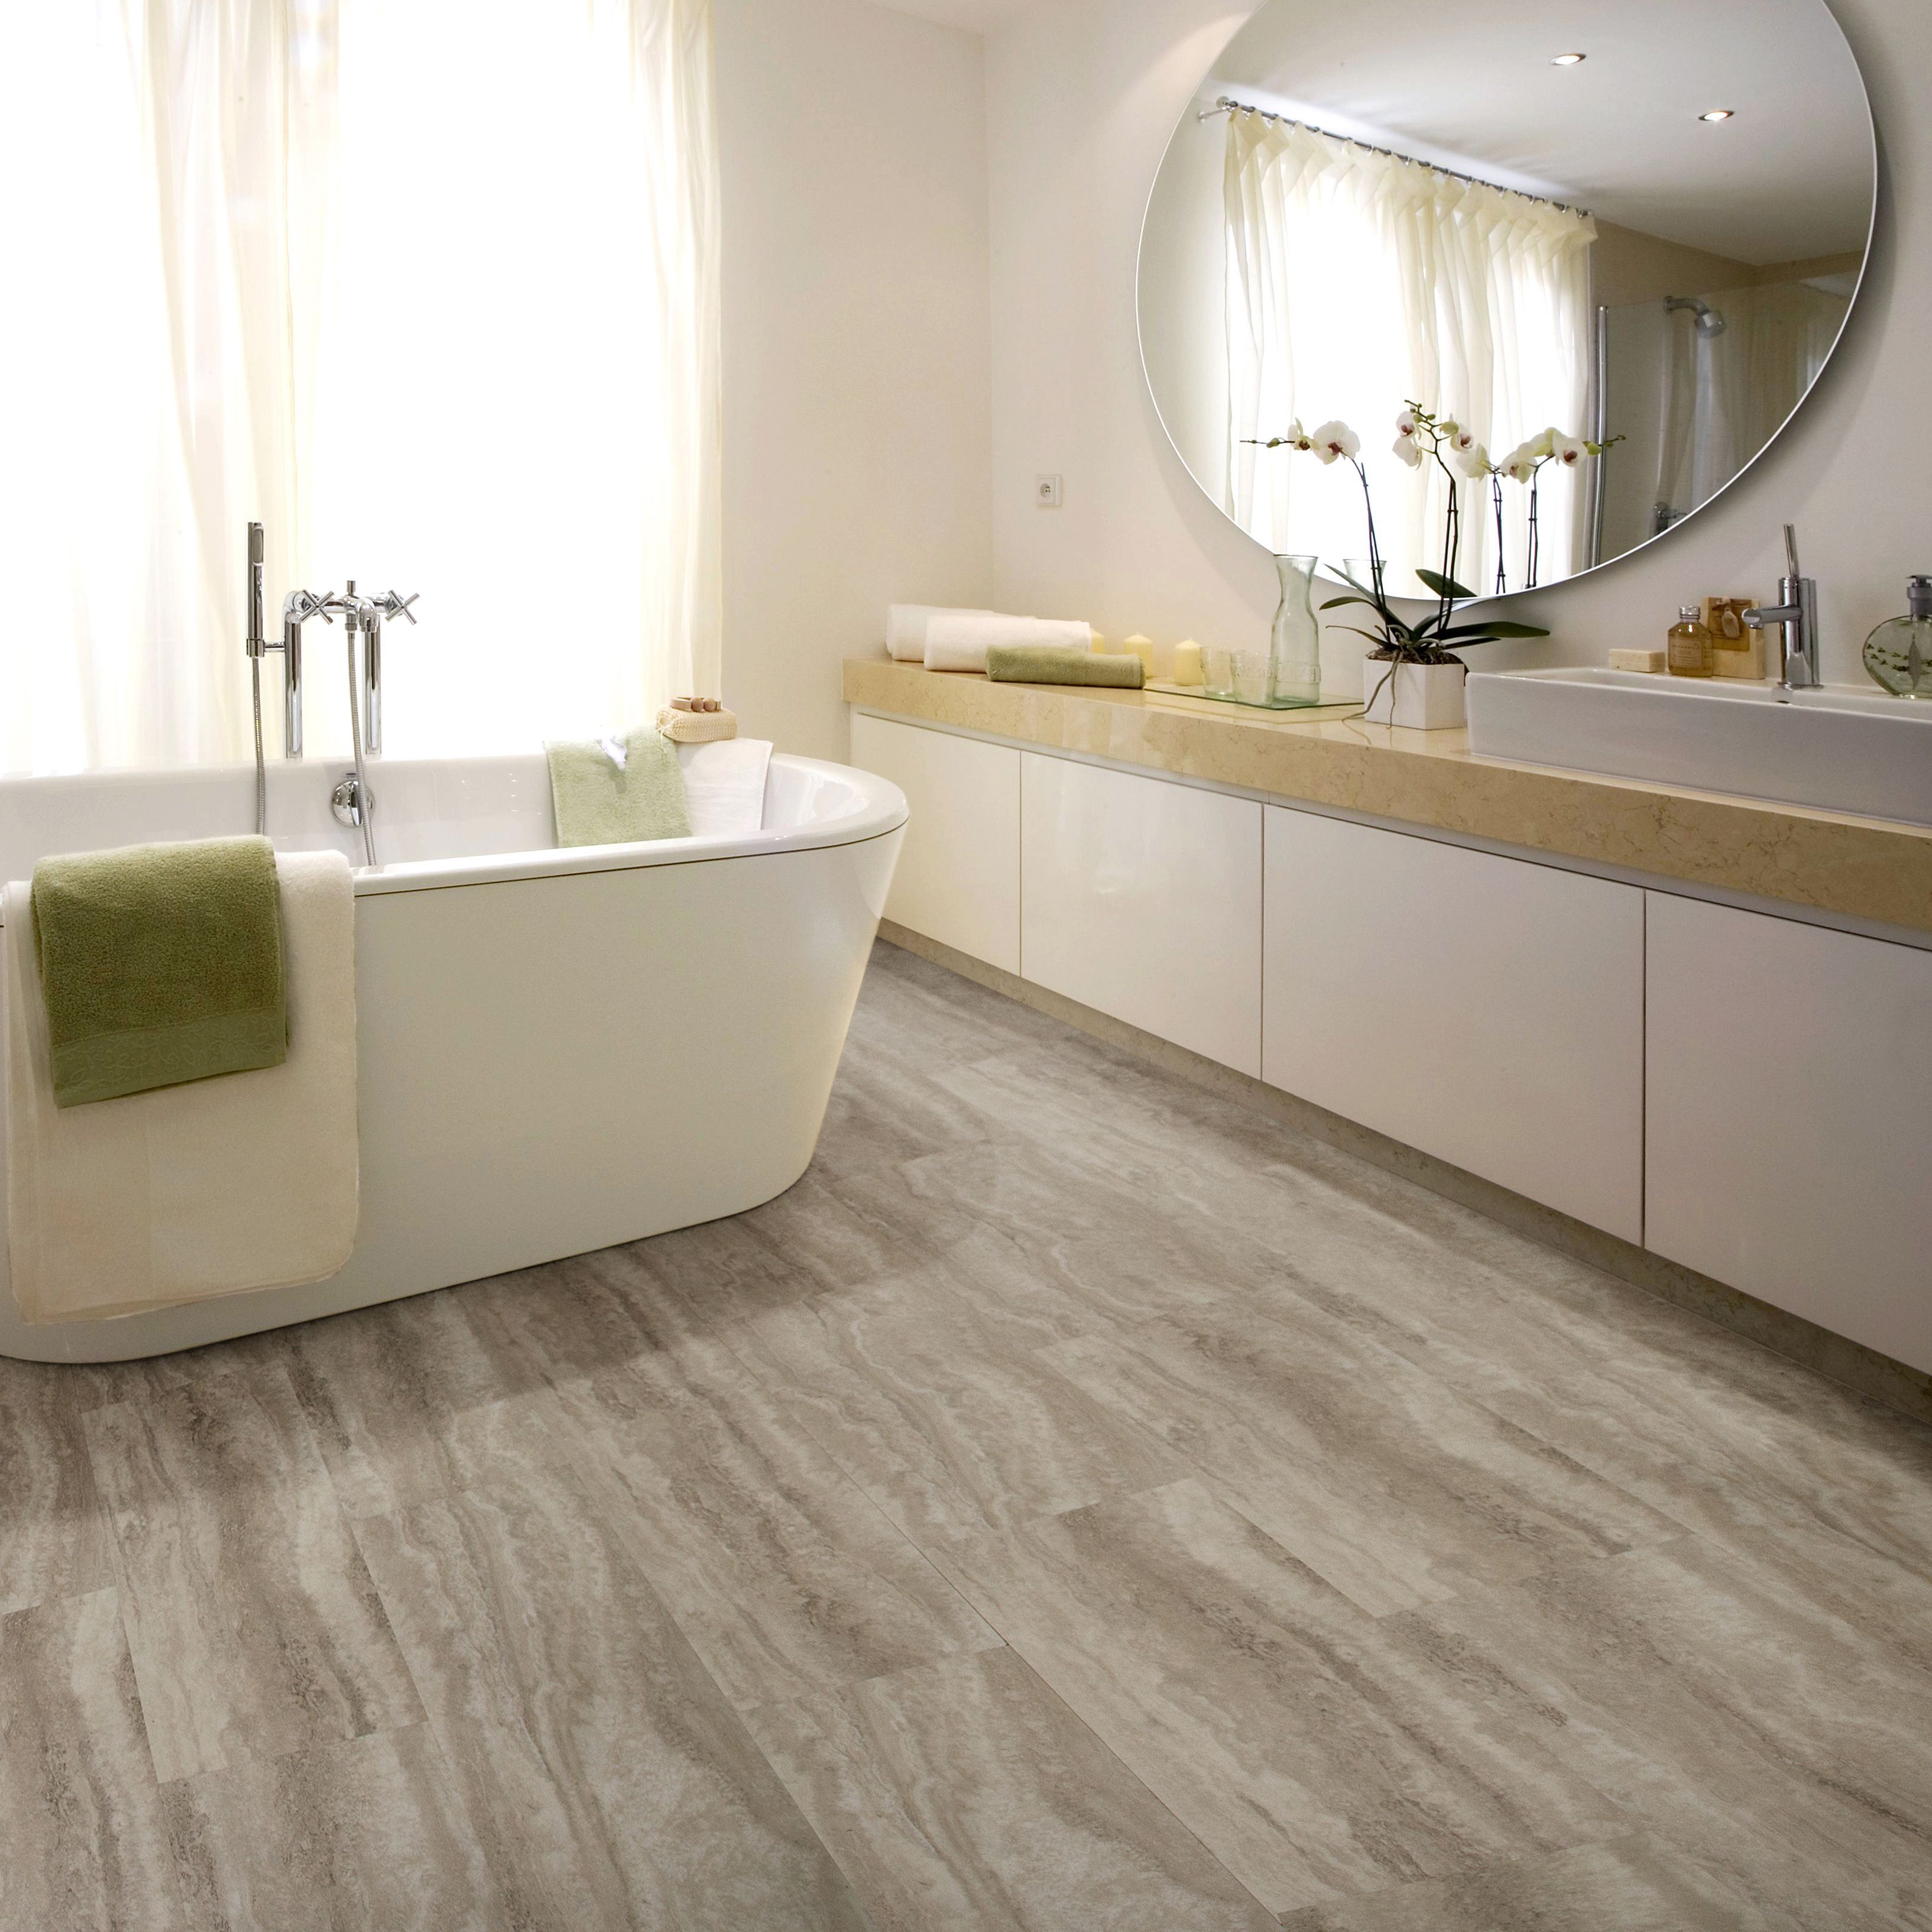 Waterproof Laminate Flooring, Waterproof Laminate Flooring For Bathrooms B Q